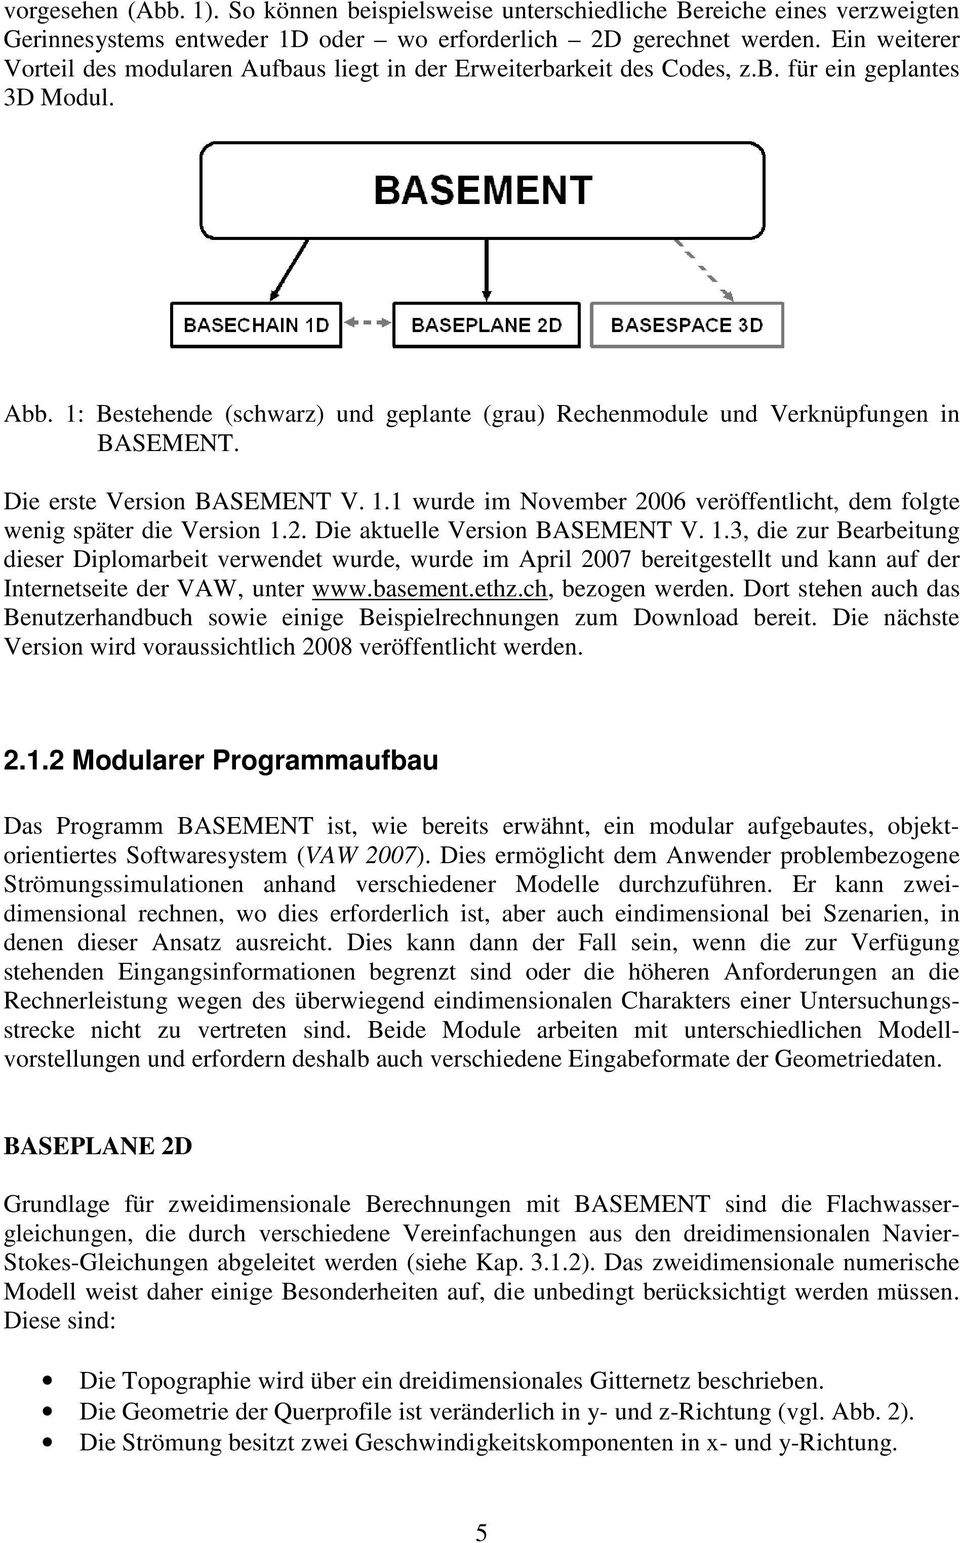 1: Bestehende (schwarz) und geplante (grau) Rechenmodule und Verknüpfungen in BASEMENT. Die erste Version BASEMENT V. 1.1 wurde im November 2006 veröffentlicht, dem folgte wenig später die Version 1.